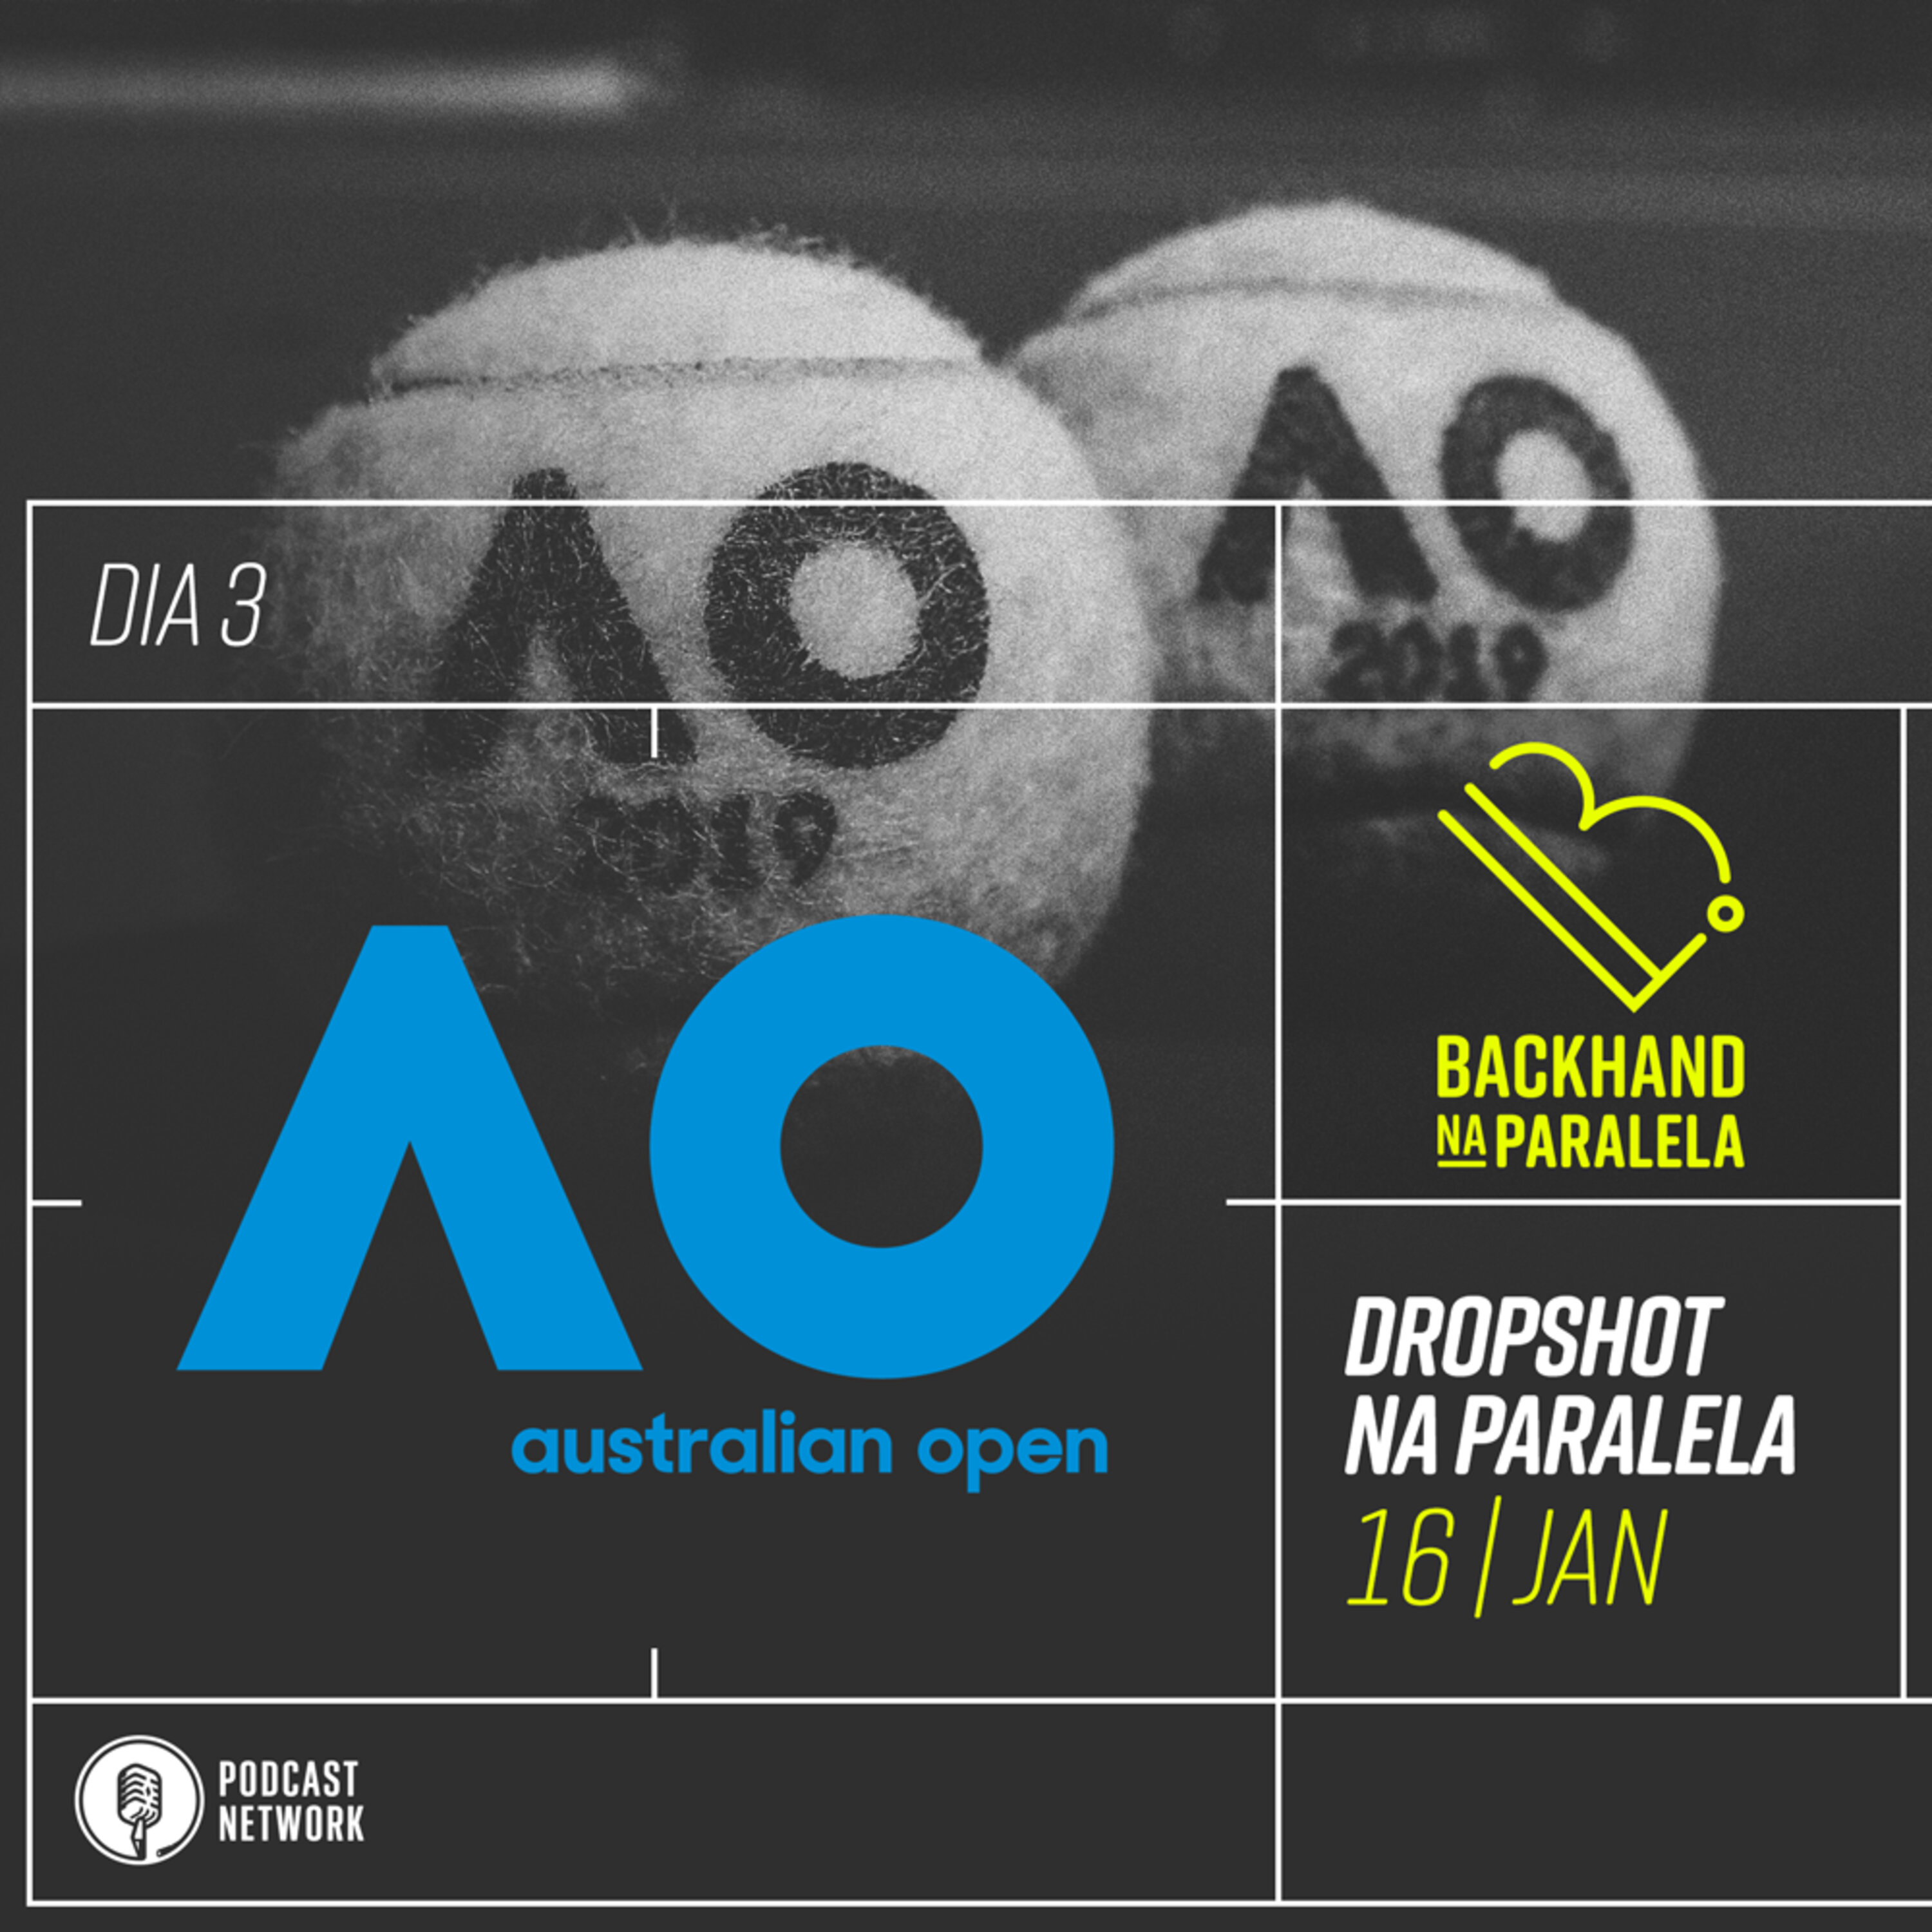 Dropshot na Paralela – Australian Open 2019 – Dia 3